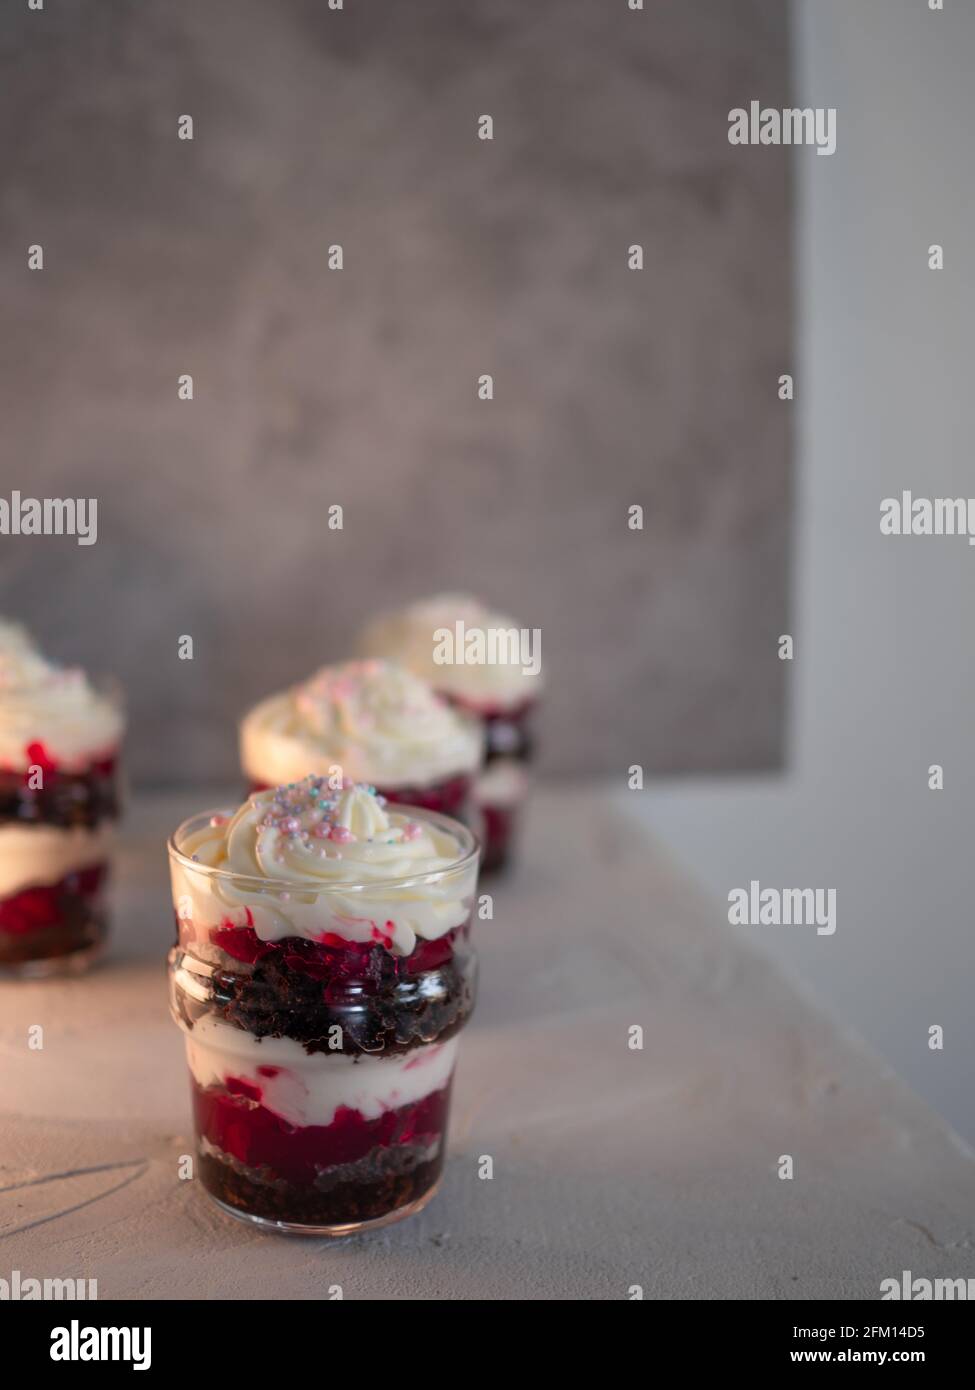 Kirsche Kleinigkeiten, Dessert in einem Glas, Kuchen, Beere und Mascapon Creme, Creme ist auf der Oberseite dekoriert. Stockfoto